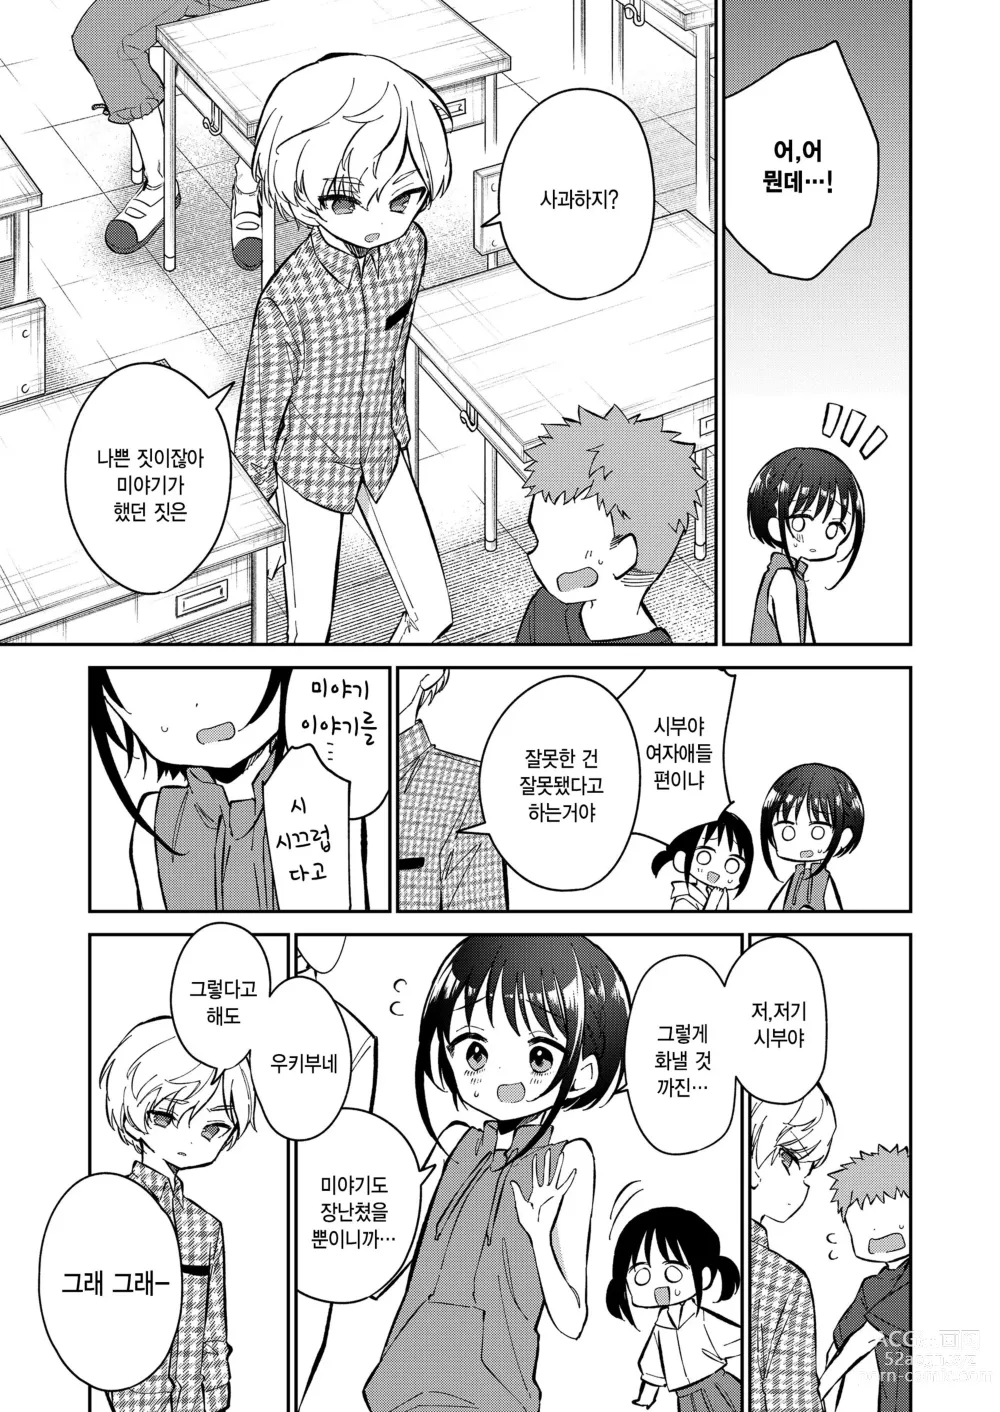 Page 39 of manga Watashi ga iki wo shiteru basho